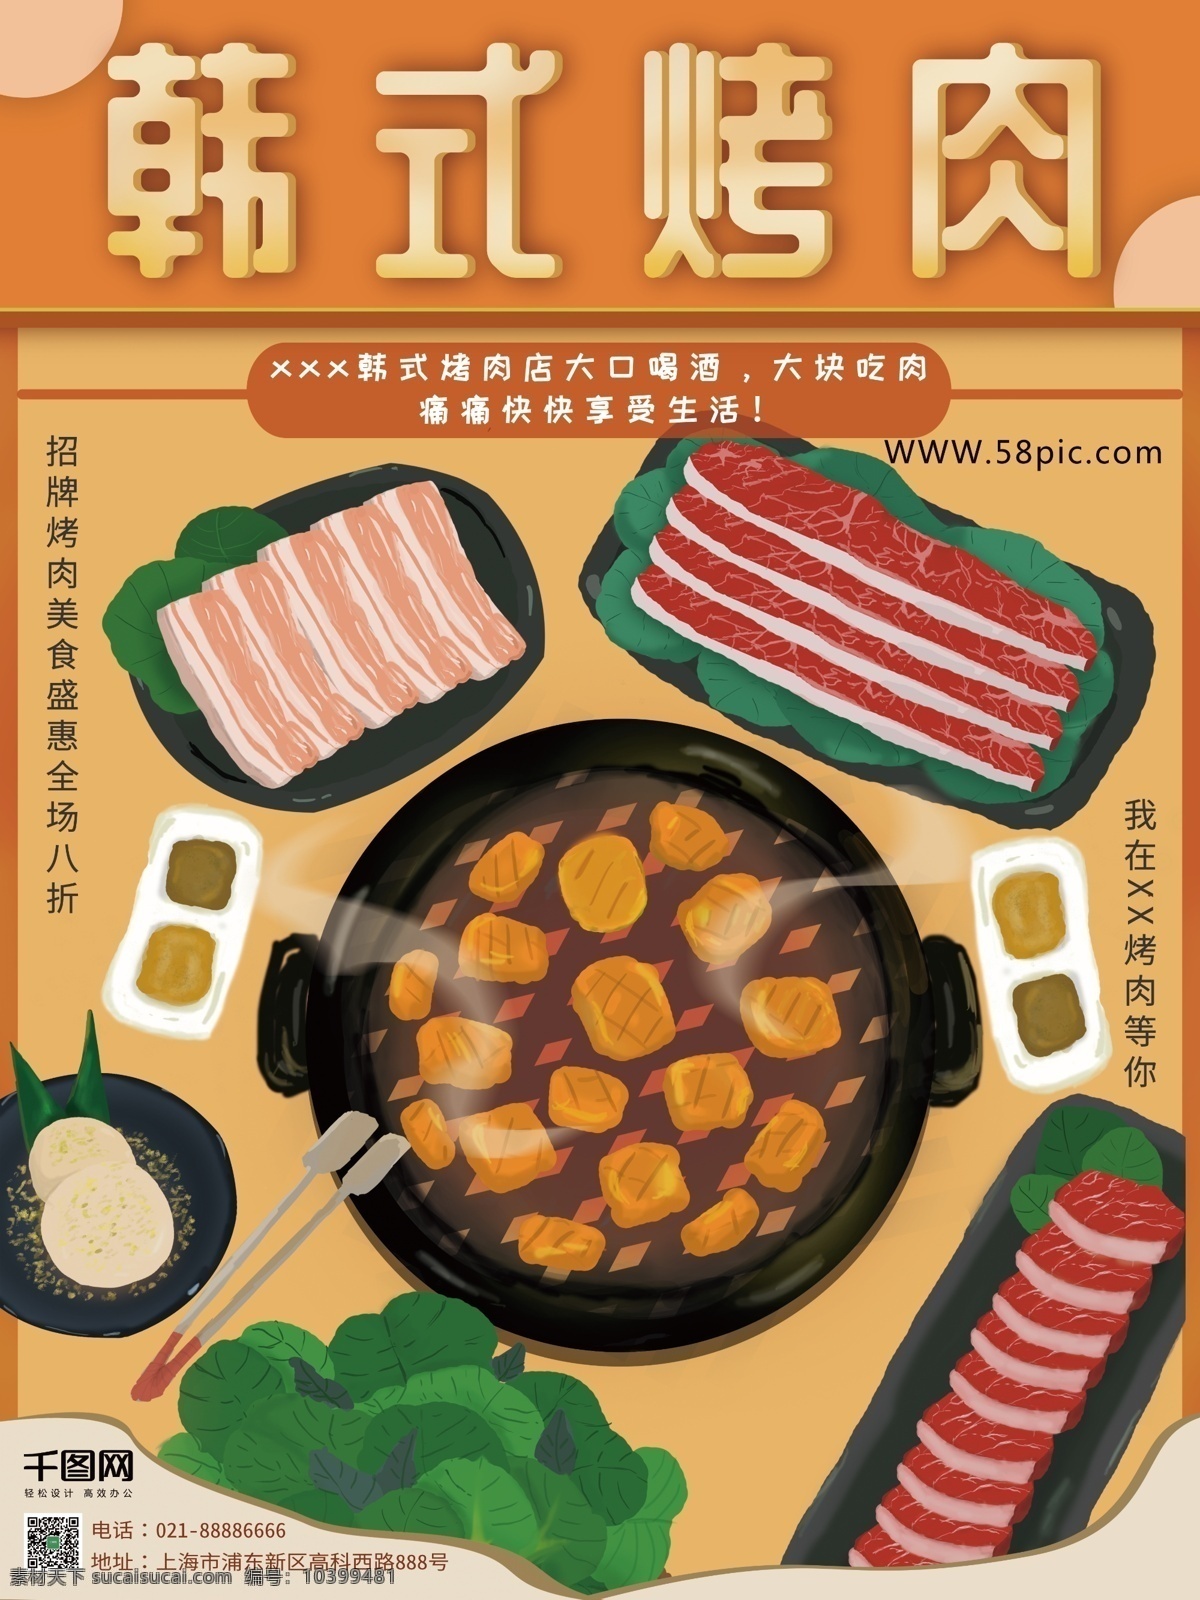 原创 手绘 韩式 烤肉 海报 手绘烤肉 宣传海报 手绘海报 烤肉宣传 橙色 牛肉